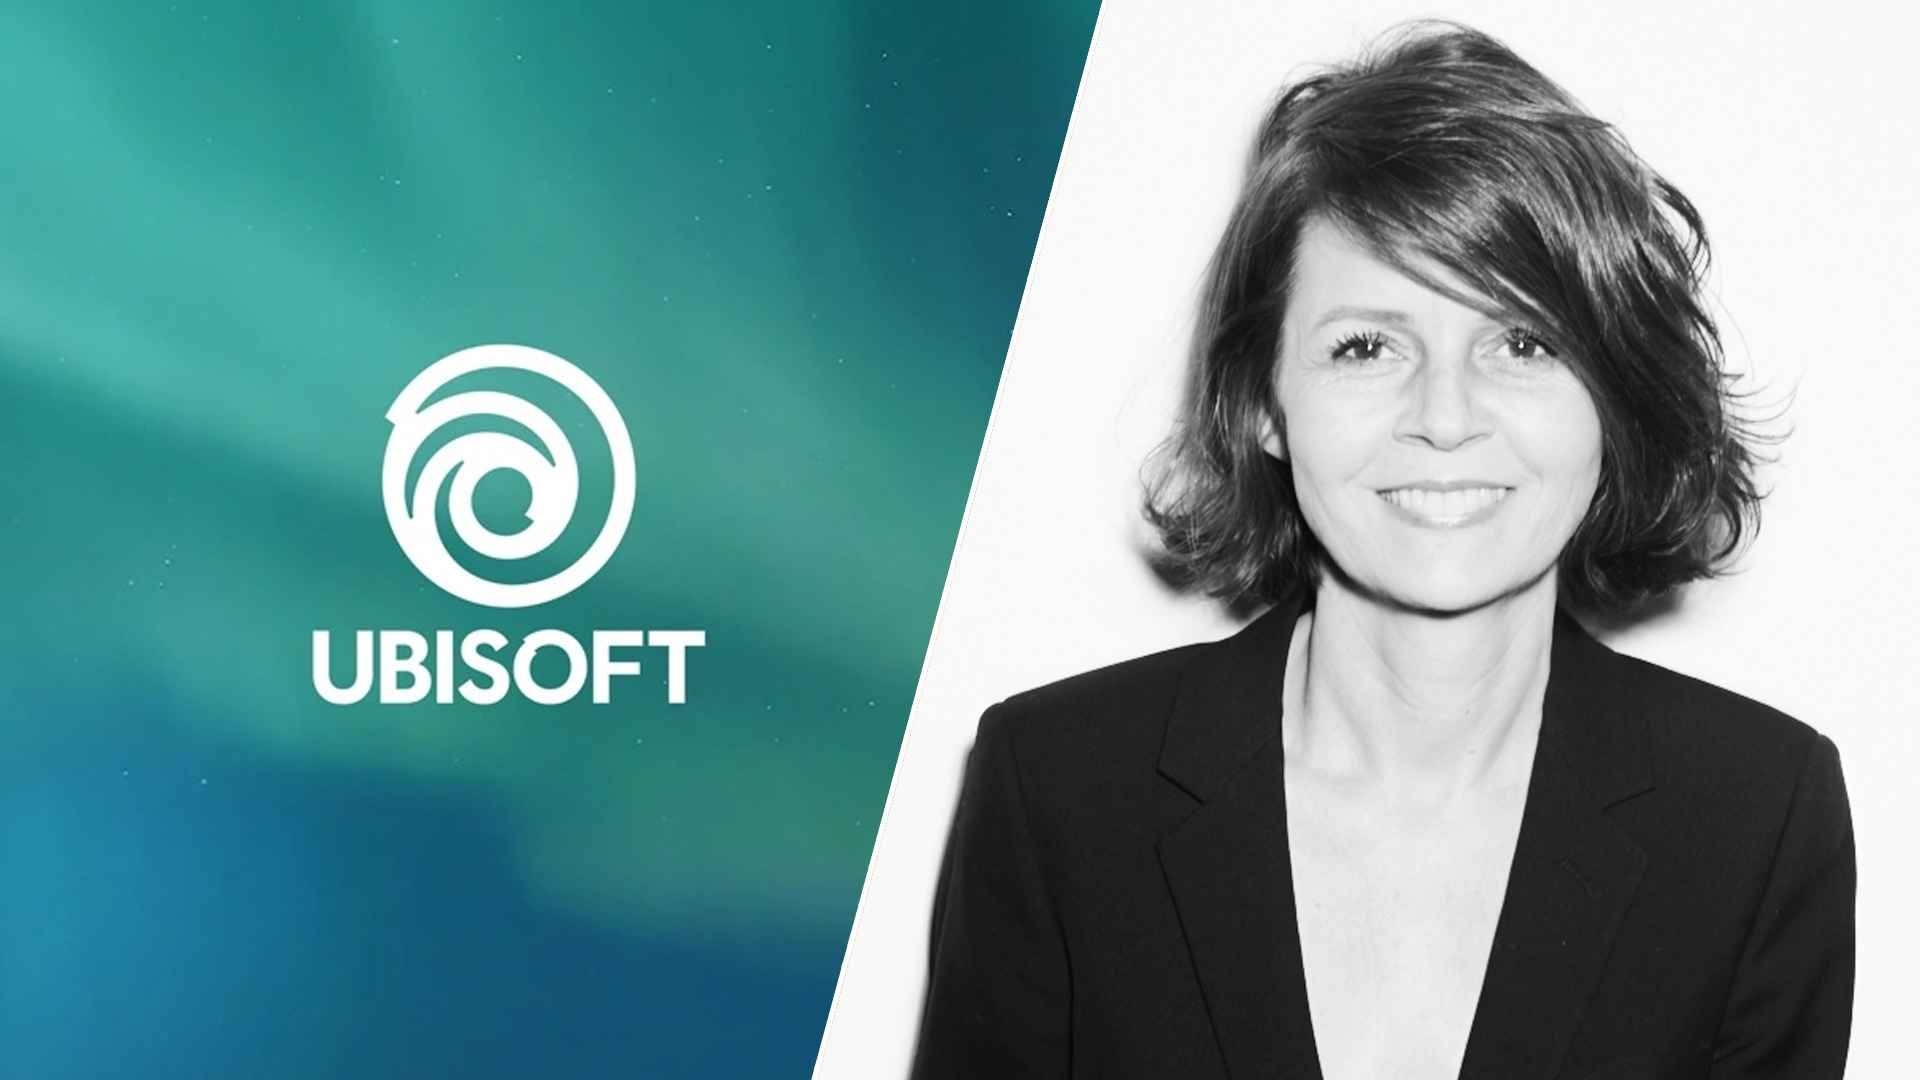 Ubisoft Appoints Cécile Russeil as Executive Vice President